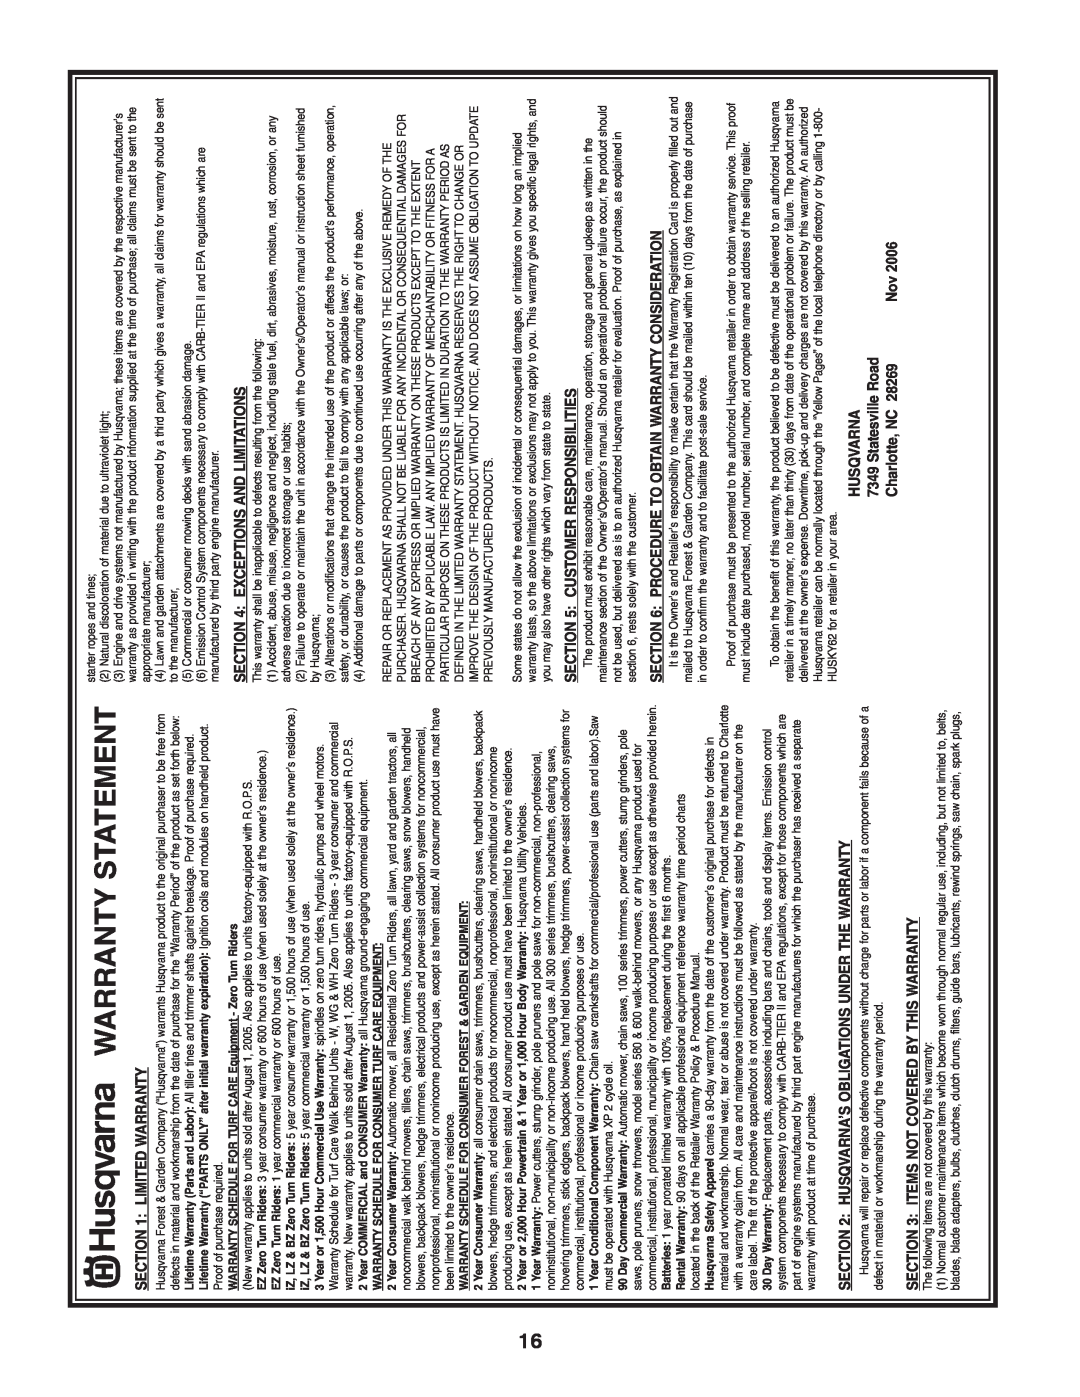 Husqvarna XT722FE Warranty Statement, Limited Warranty, Husqvarna’S Obligations Under The Warranty, Statesville Road 